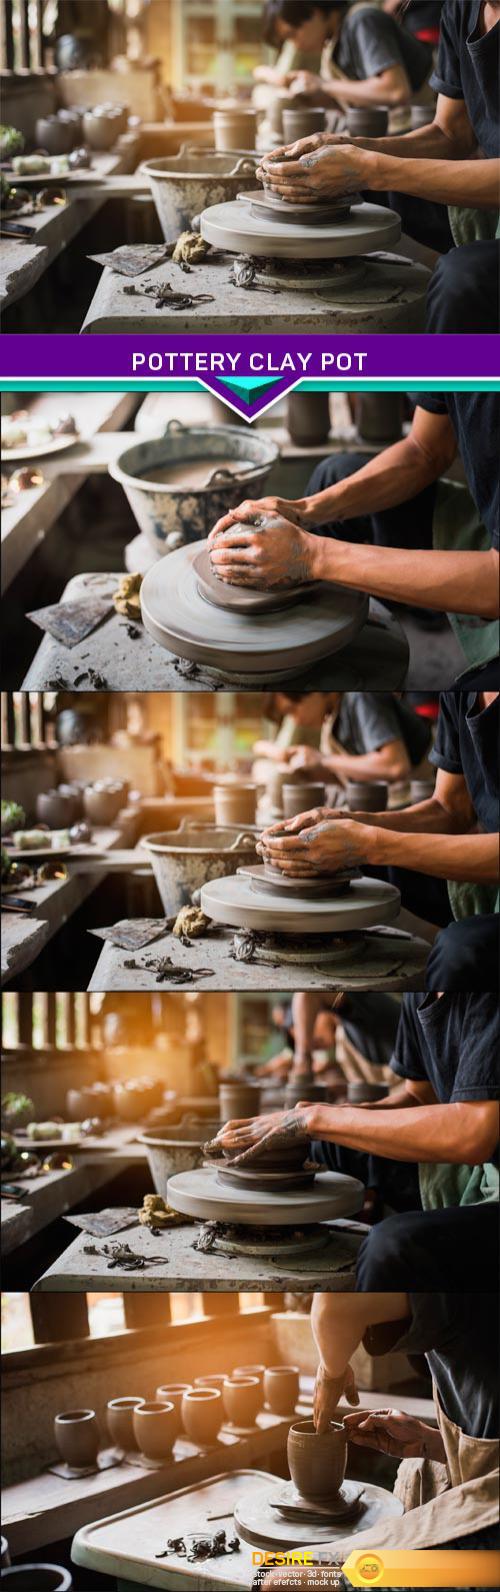 Pottery clay pot 4X JPEG